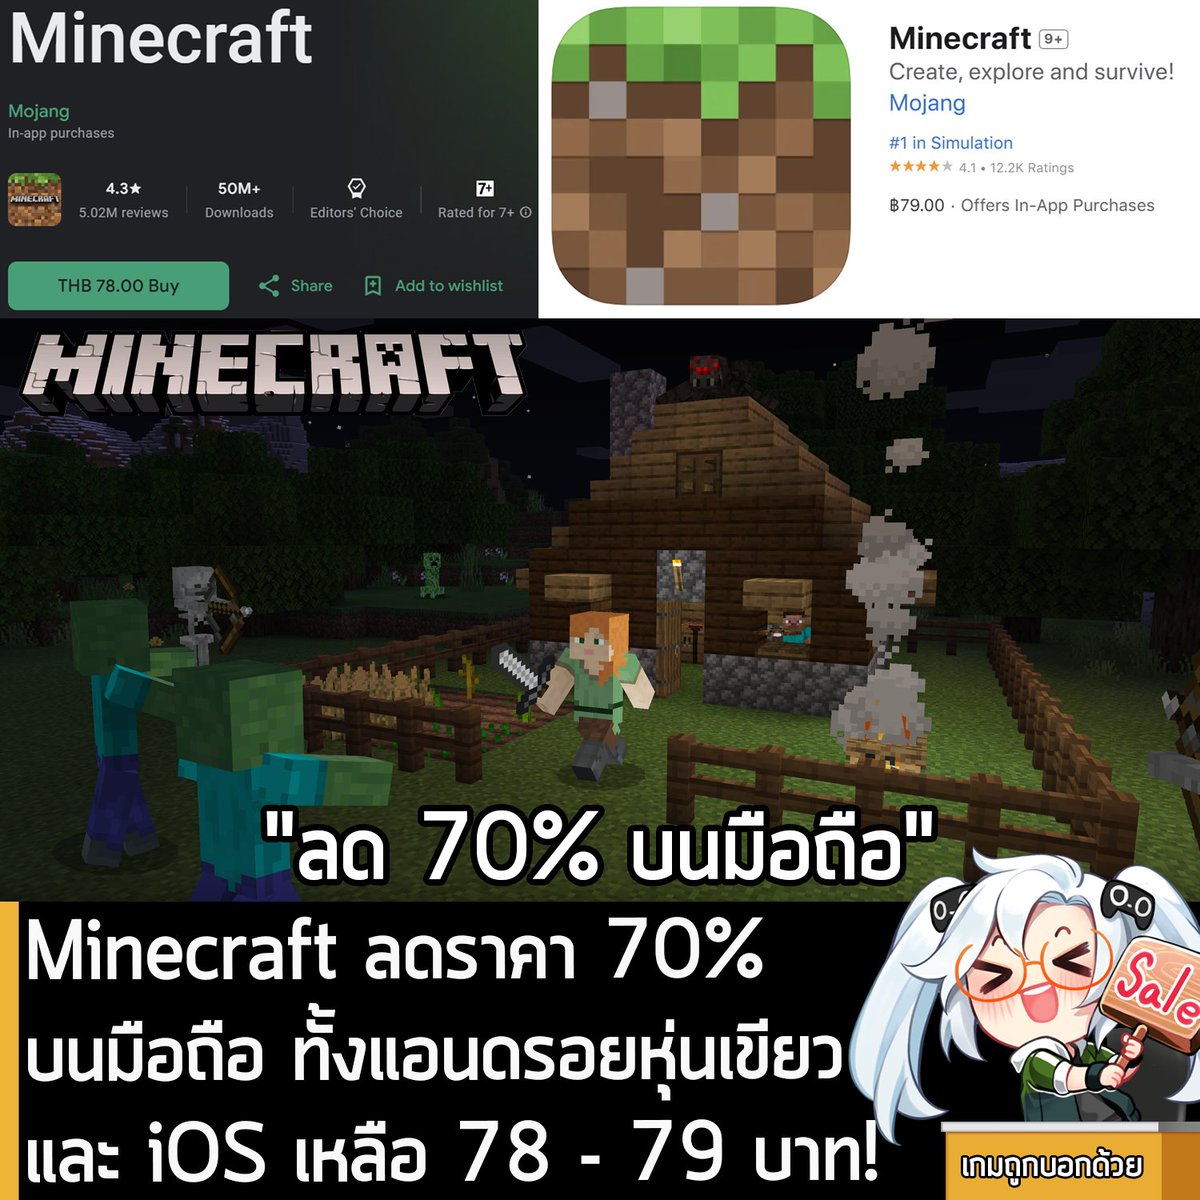 ข่าวเกมมือถือนะครัช ในตอนนี้ Minecraft เกมเอาตัวรอดในโลกเหลี่ยมๆ กำลังลดราคา 70% บน iOS และแอนดรอยหุ่นเขียว เหลือราคาดังนี้
.
Minecraft บน Google Play Store ลดราคาเหลือ 78 บาท
.
Minecraft บน iOS App Store ลดราคาเหลือ 79 บาท
.
ลดราคาฉลอง Minecraft ครบรอบ 15 ปี